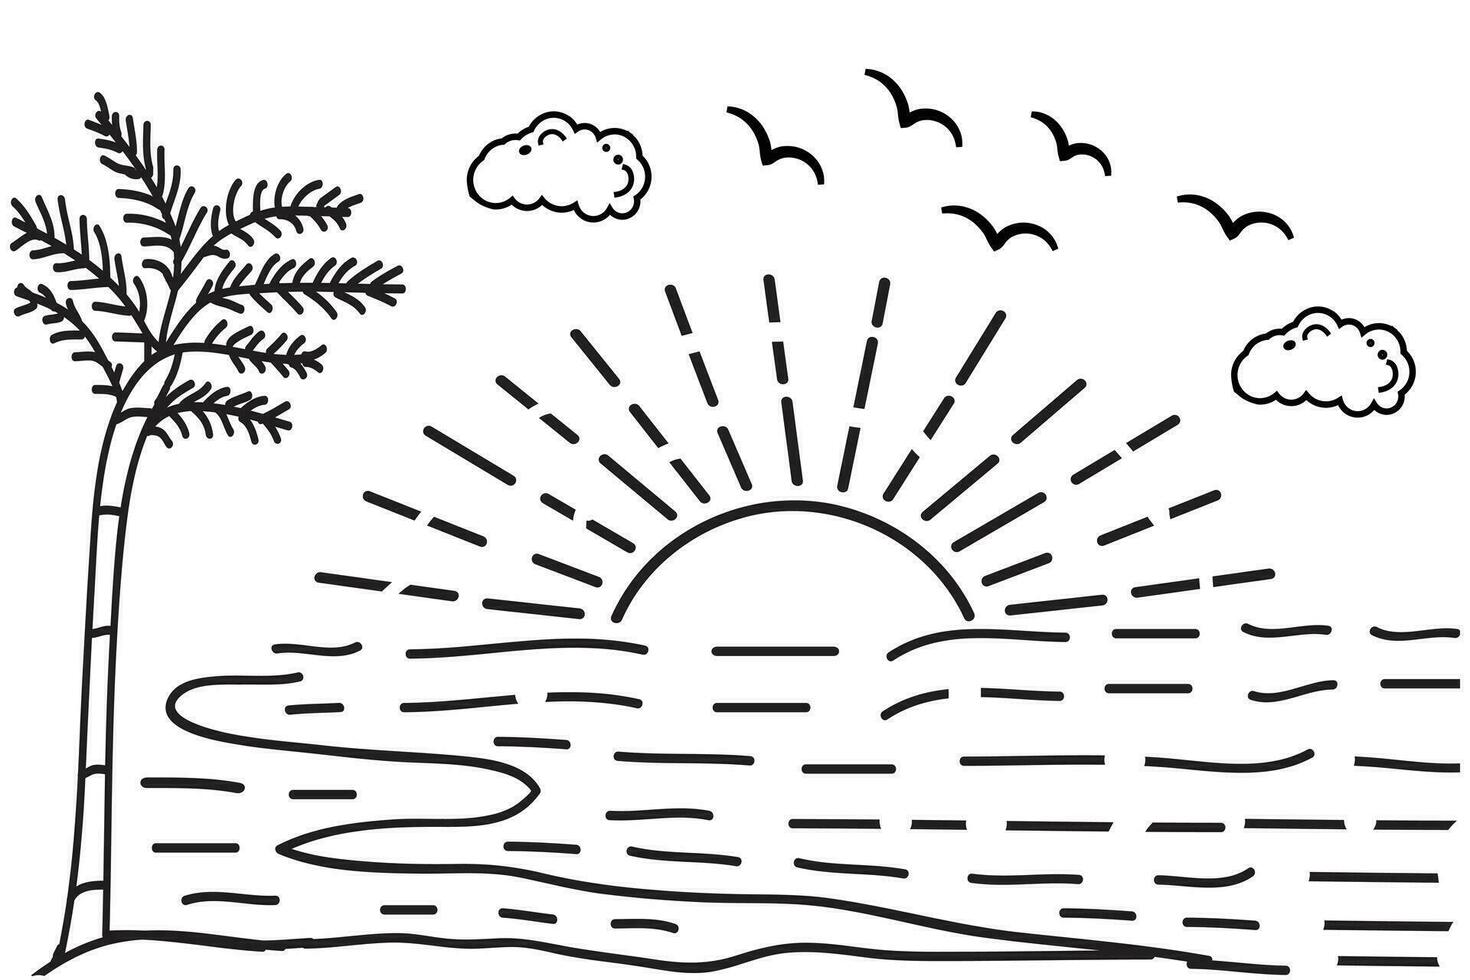 sommar solnedgång tropisk strand linje konst vektor illustration, hand dragen solnedgång och soluppgång översikt landskap tropisk strand, handflatan träd med solnedgång vågor natur se, barn teckning strand färg sidor